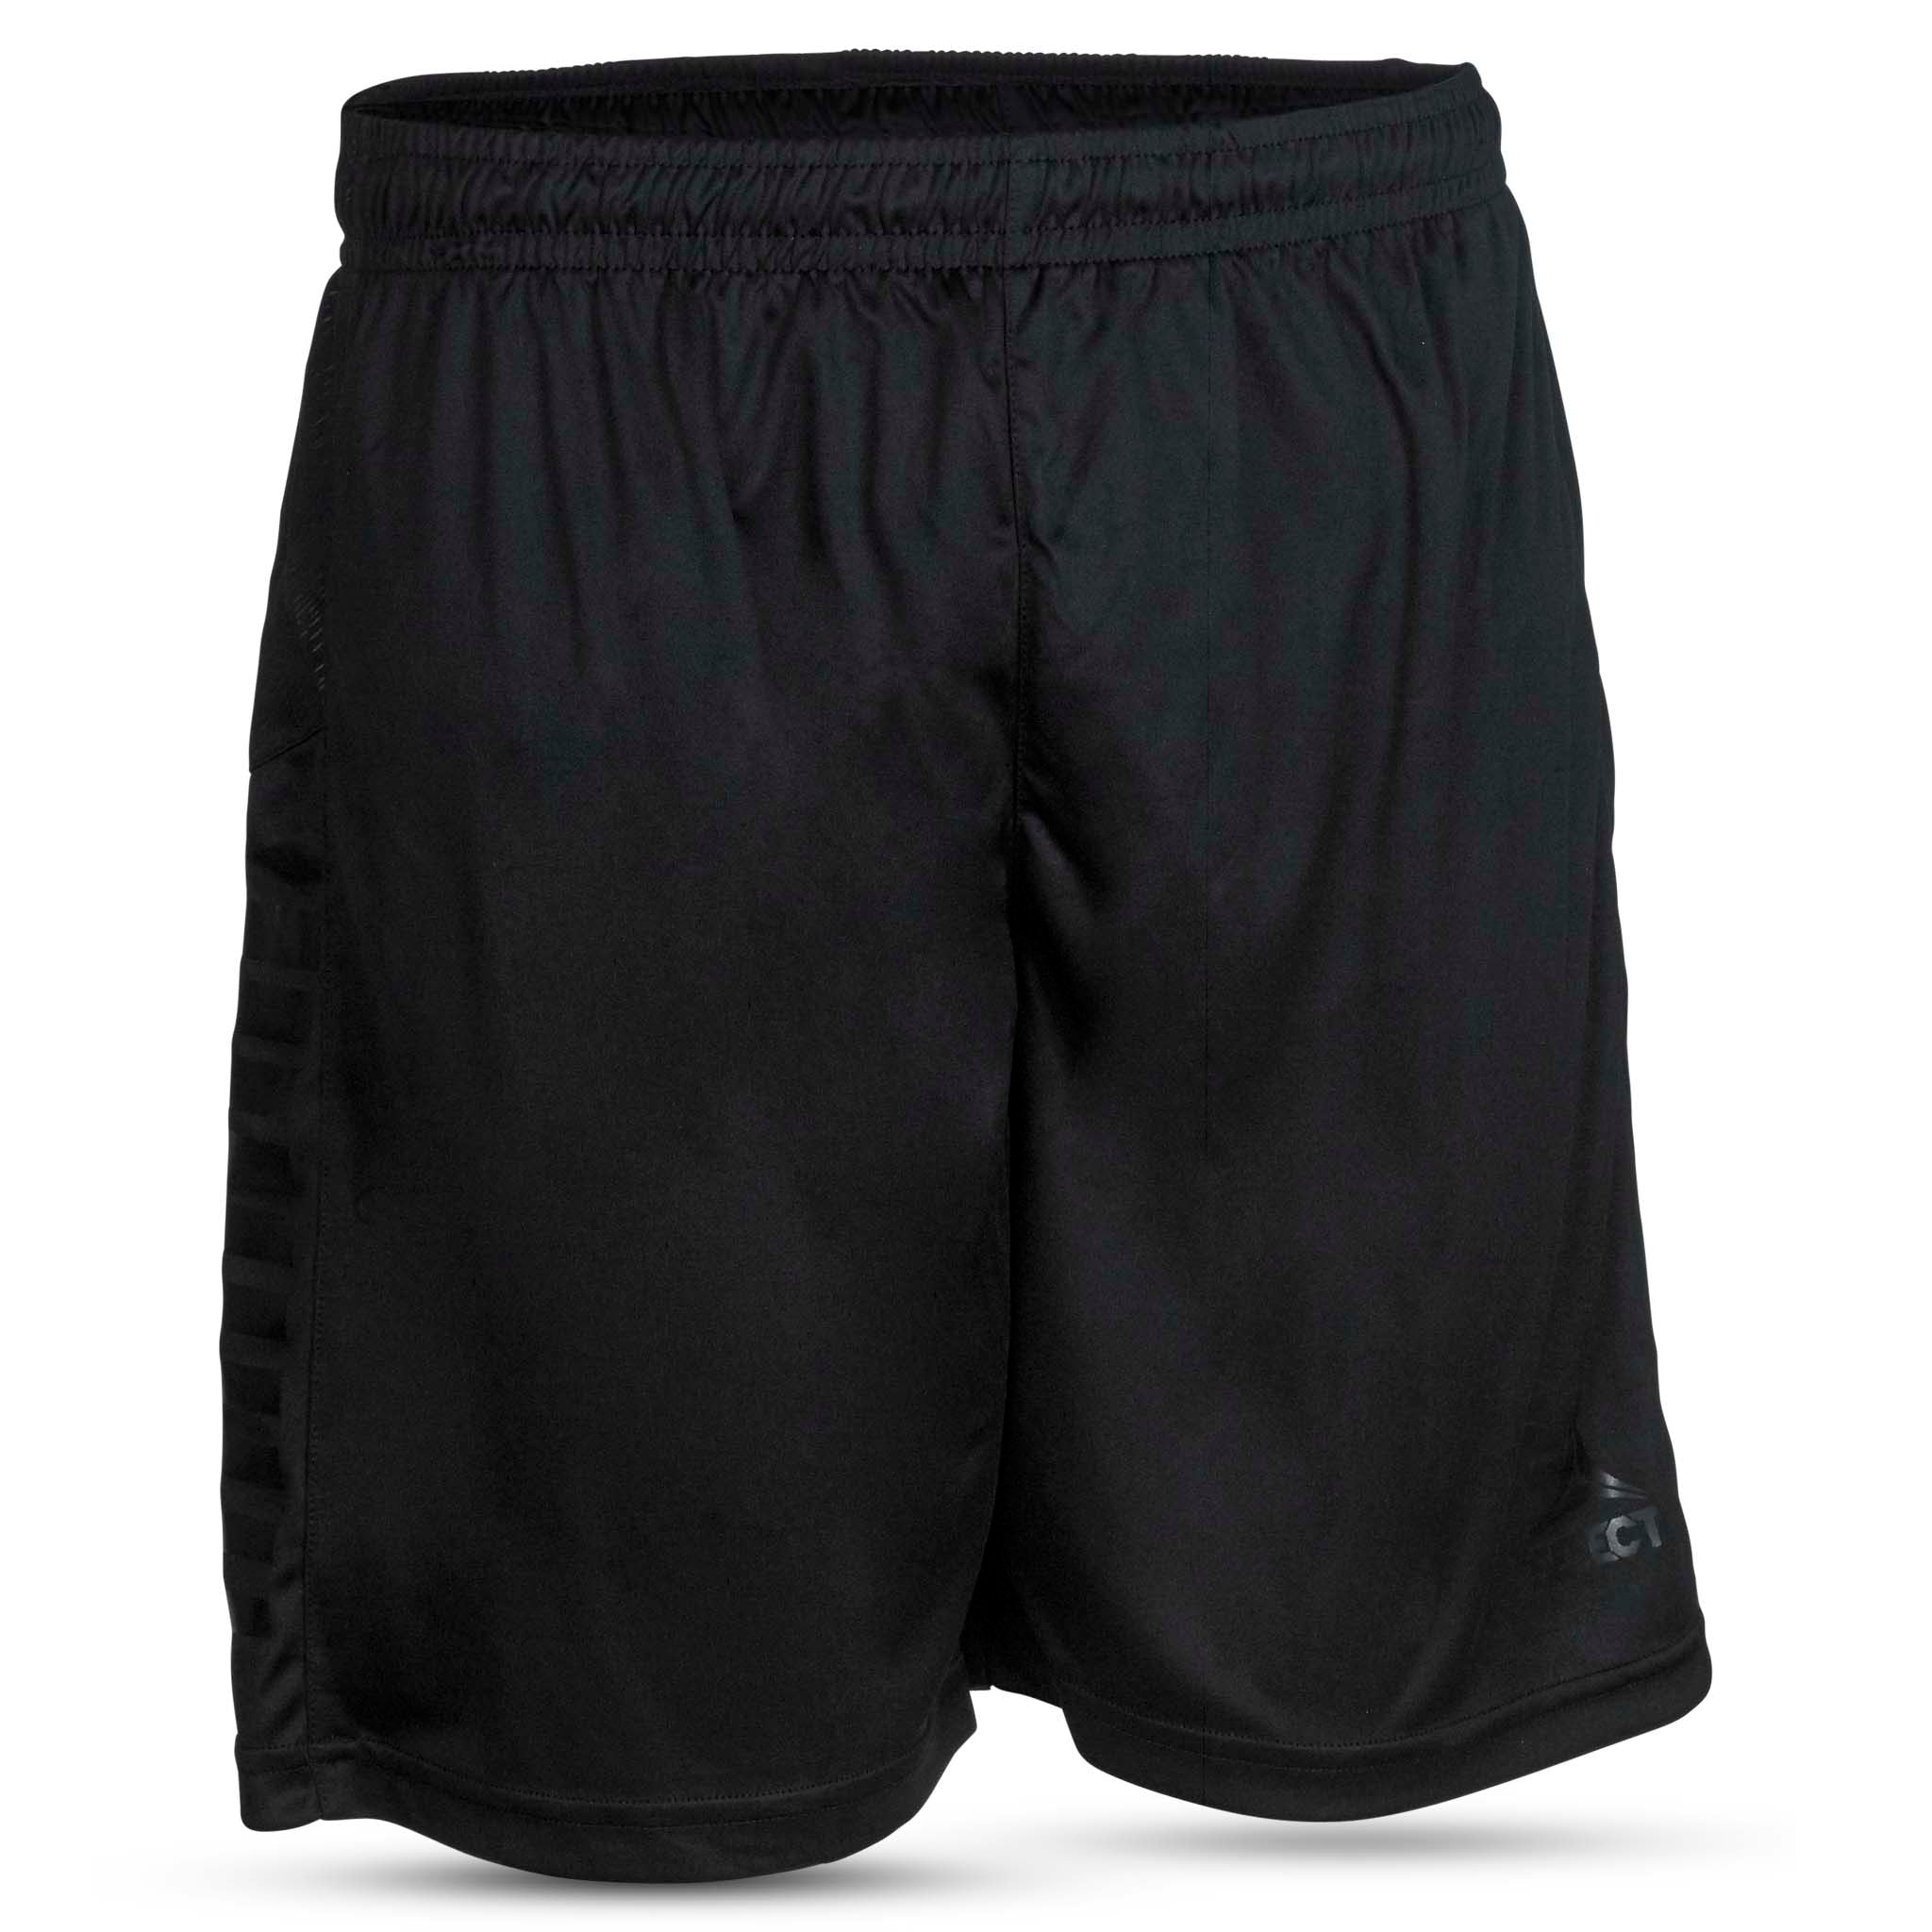 Spain Shorts - Barn #farge_svart/svart